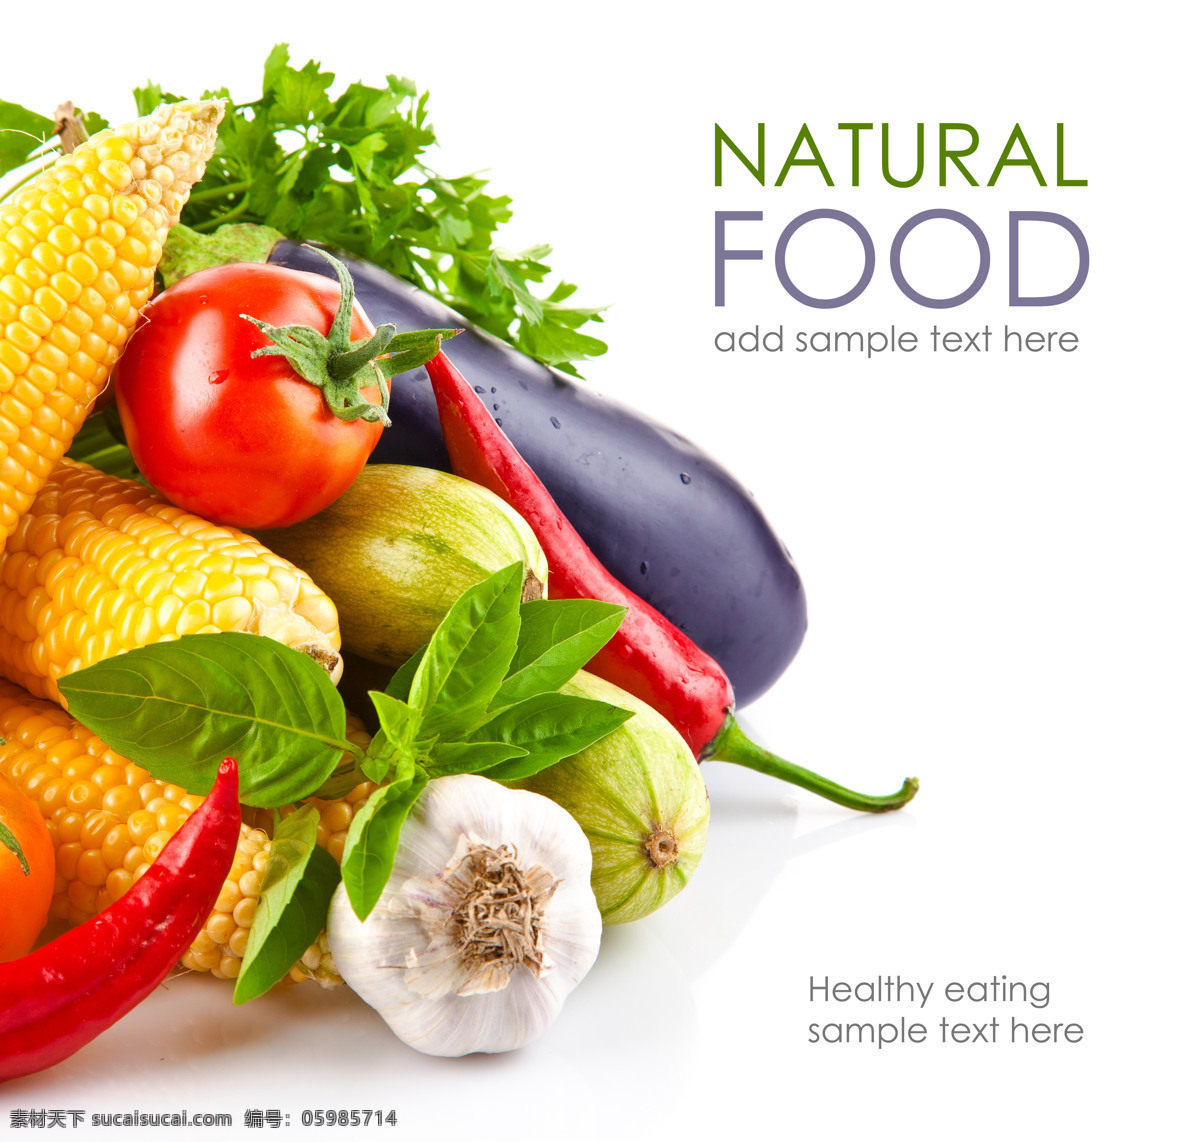 各种 绿色 蔬菜 玉米 南瓜 大蒜 西红柿 辣椒 茄子 各种绿色蔬菜 健康食物 蔬菜图片 餐饮美食